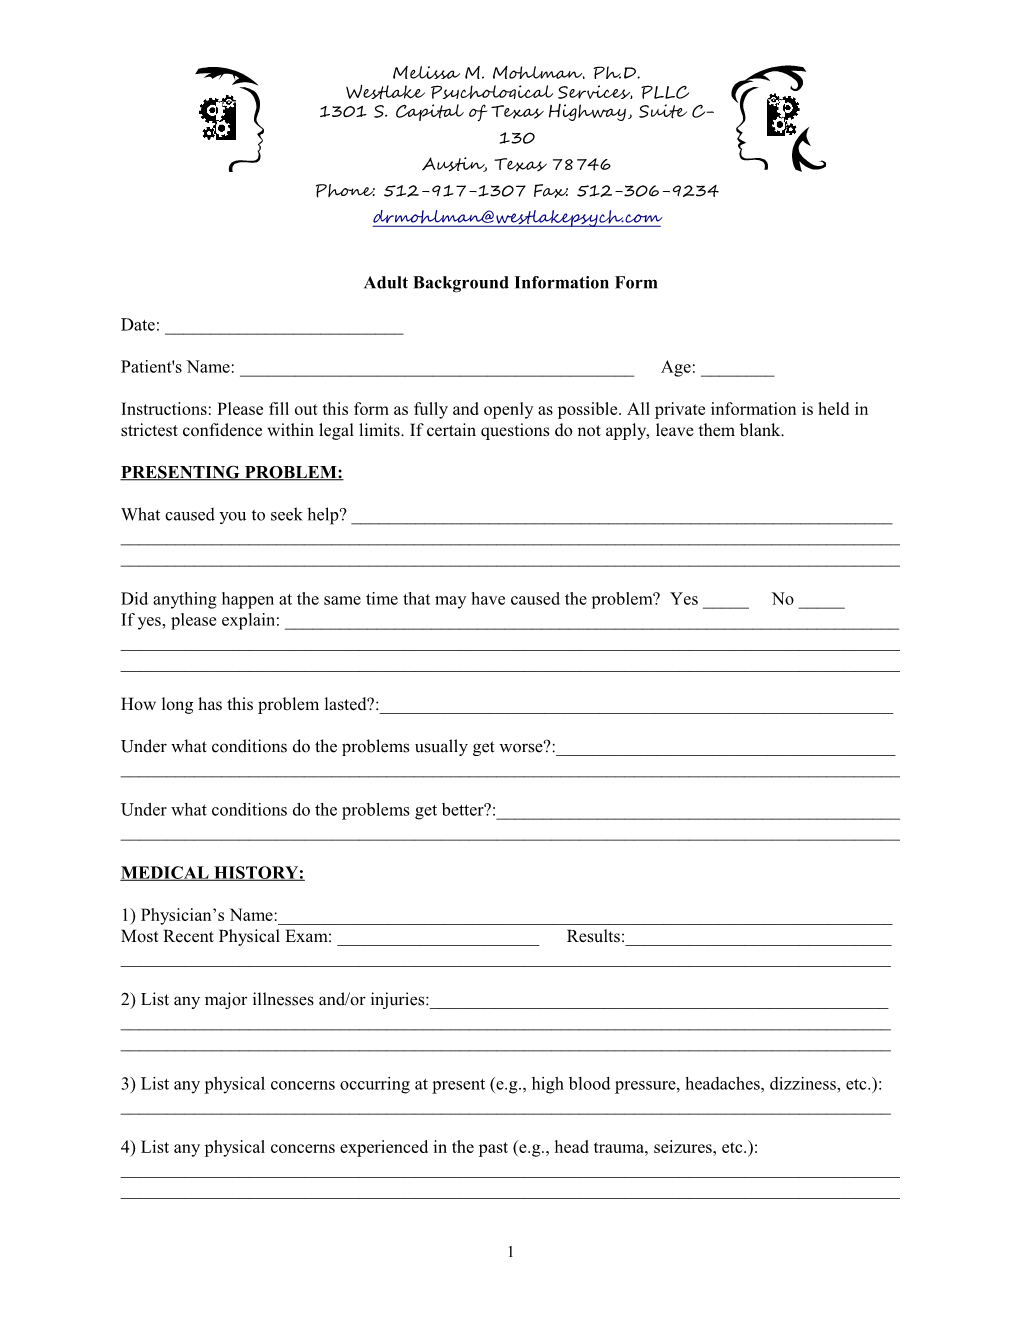 Adult Background Information Form